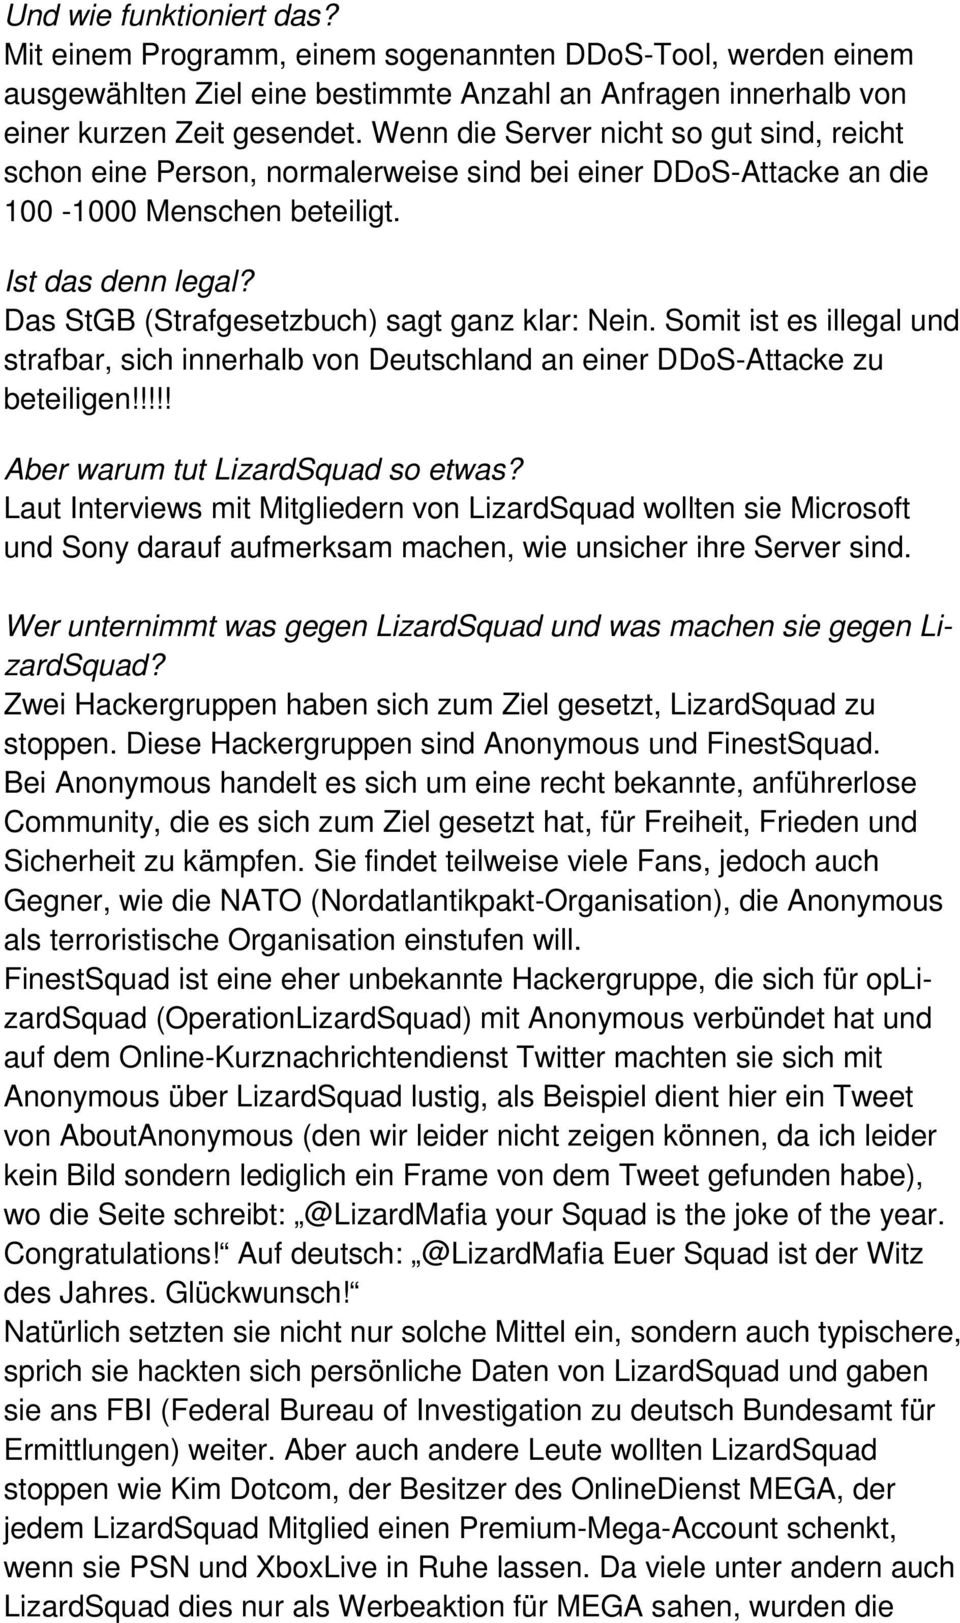 Das StGB (Strafgesetzbuch) sagt ganz klar: Nein. Somit ist es illegal und strafbar, sich innerhalb von Deutschland an einer DDoS-Attacke zu beteiligen!!!!! Aber warum tut LizardSquad so etwas?